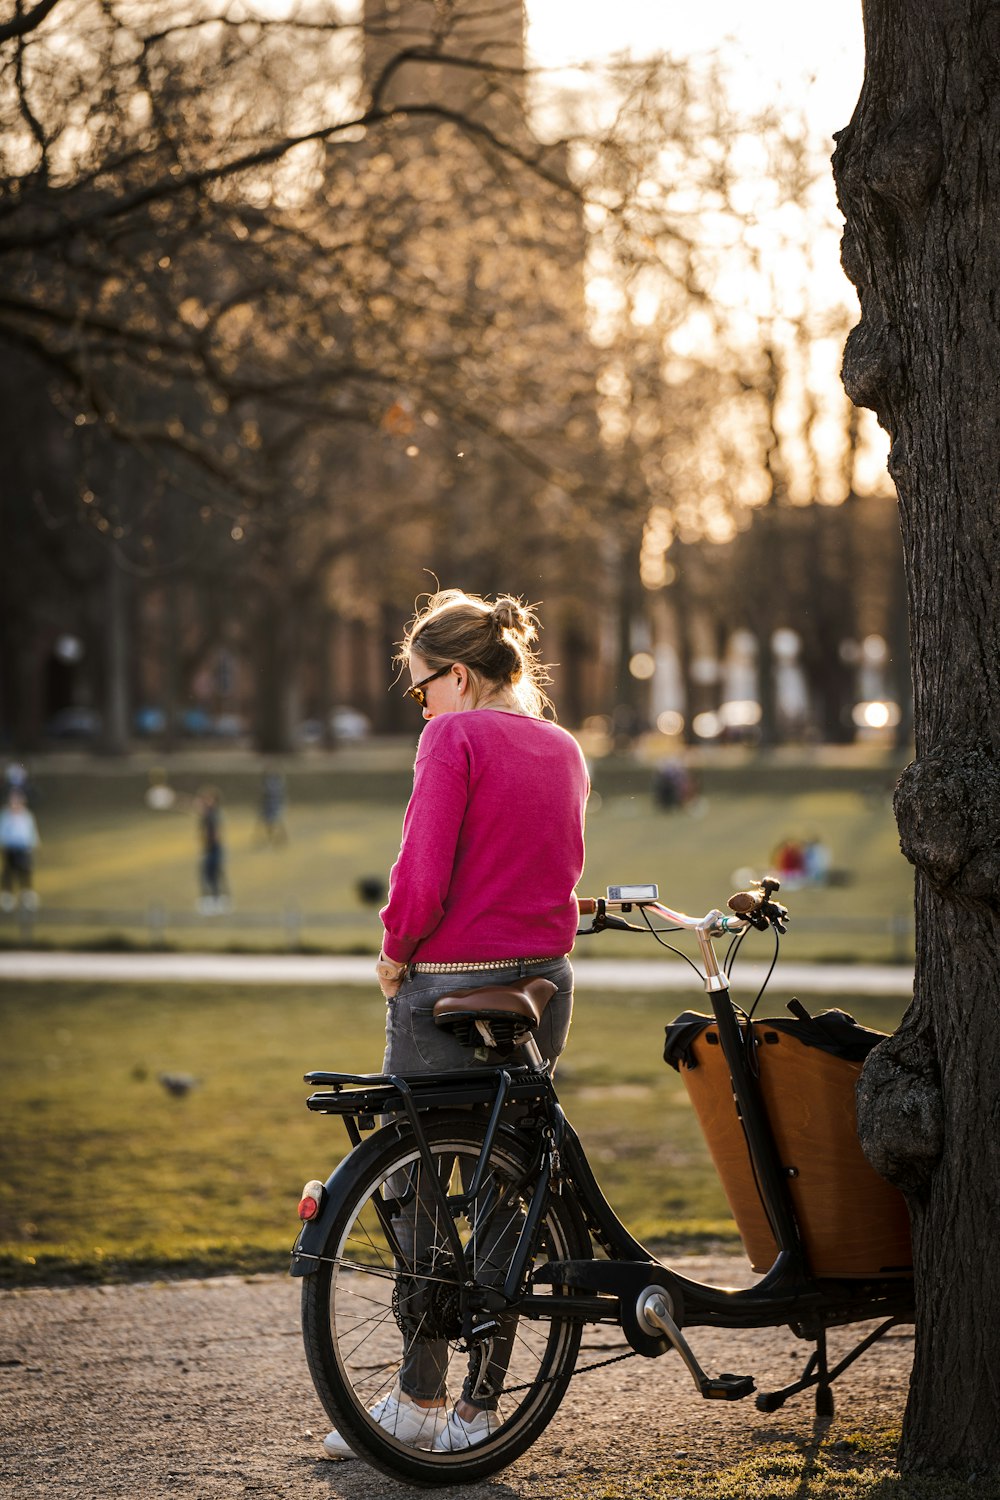 紫色の長袖シャツを着た女性が昼間、道路を自転車で走っている